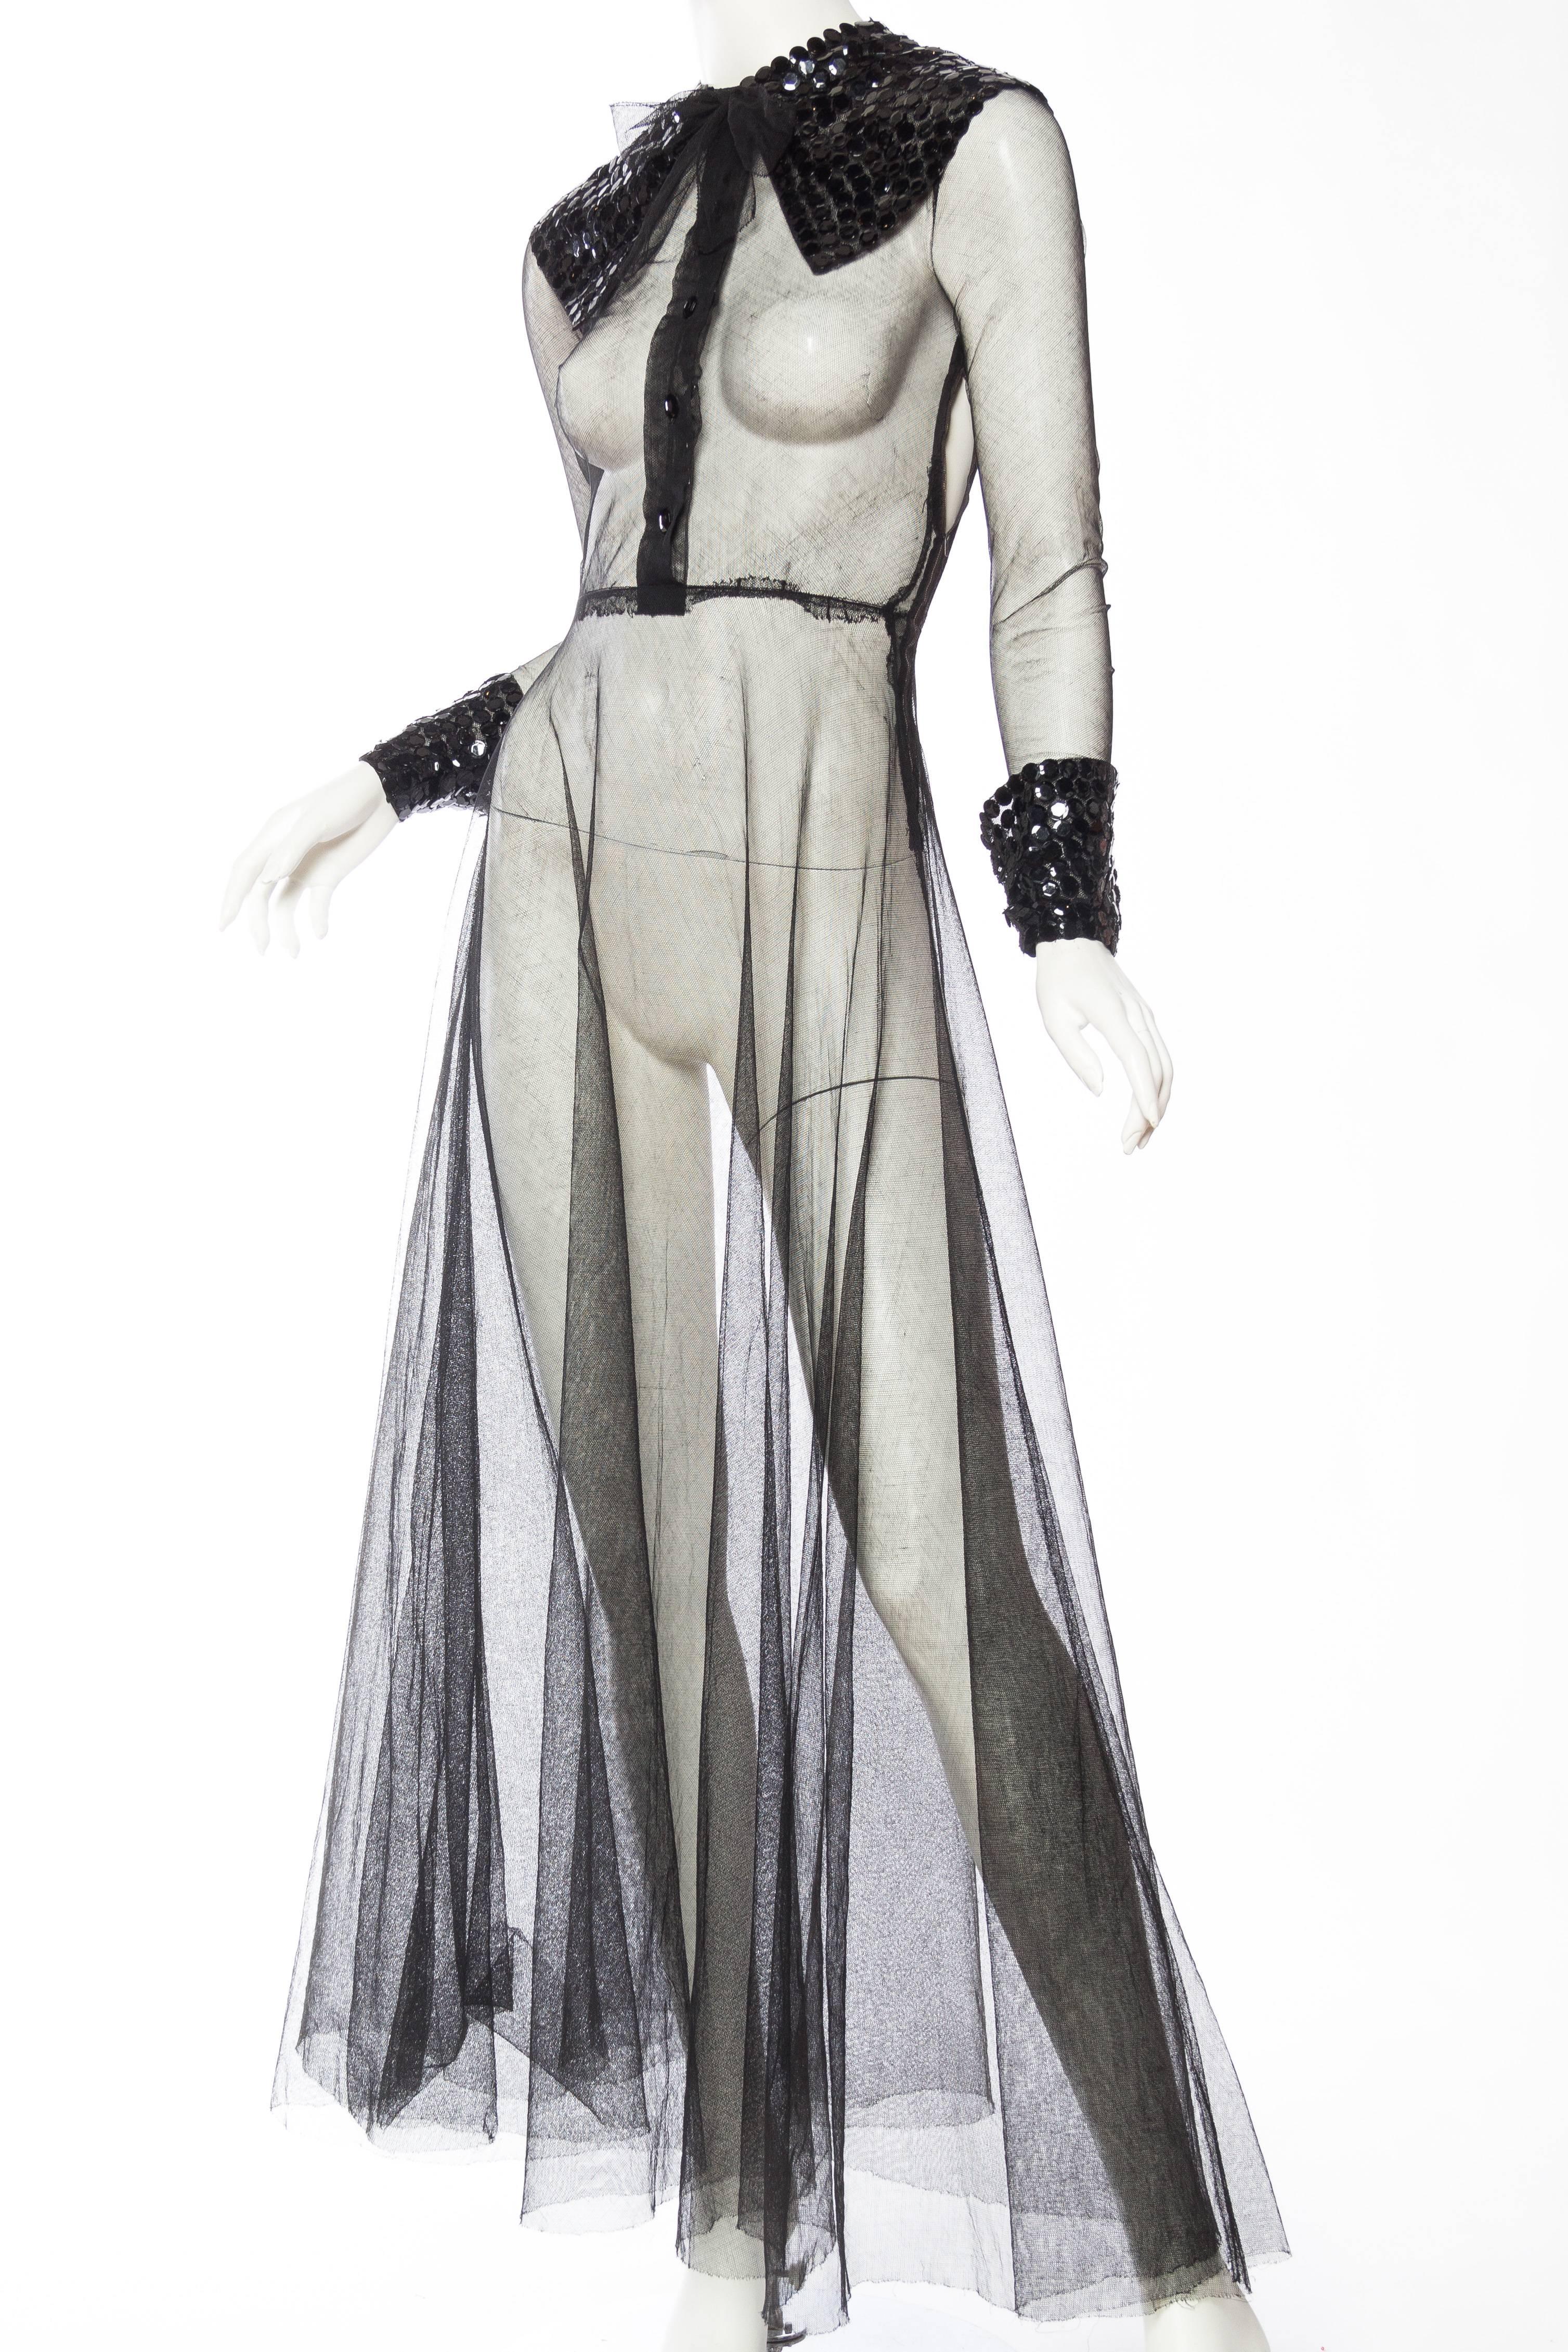 Nous avons craqué pour cette robe des années 1930 qui s'inspire évidemment de Lanvin, mais qui ressemble beaucoup à la Gucci d'aujourd'hui, vous ne trouvez pas ? Le filet de la robe est dans un état presque impeccable, mais il y a quelques petits